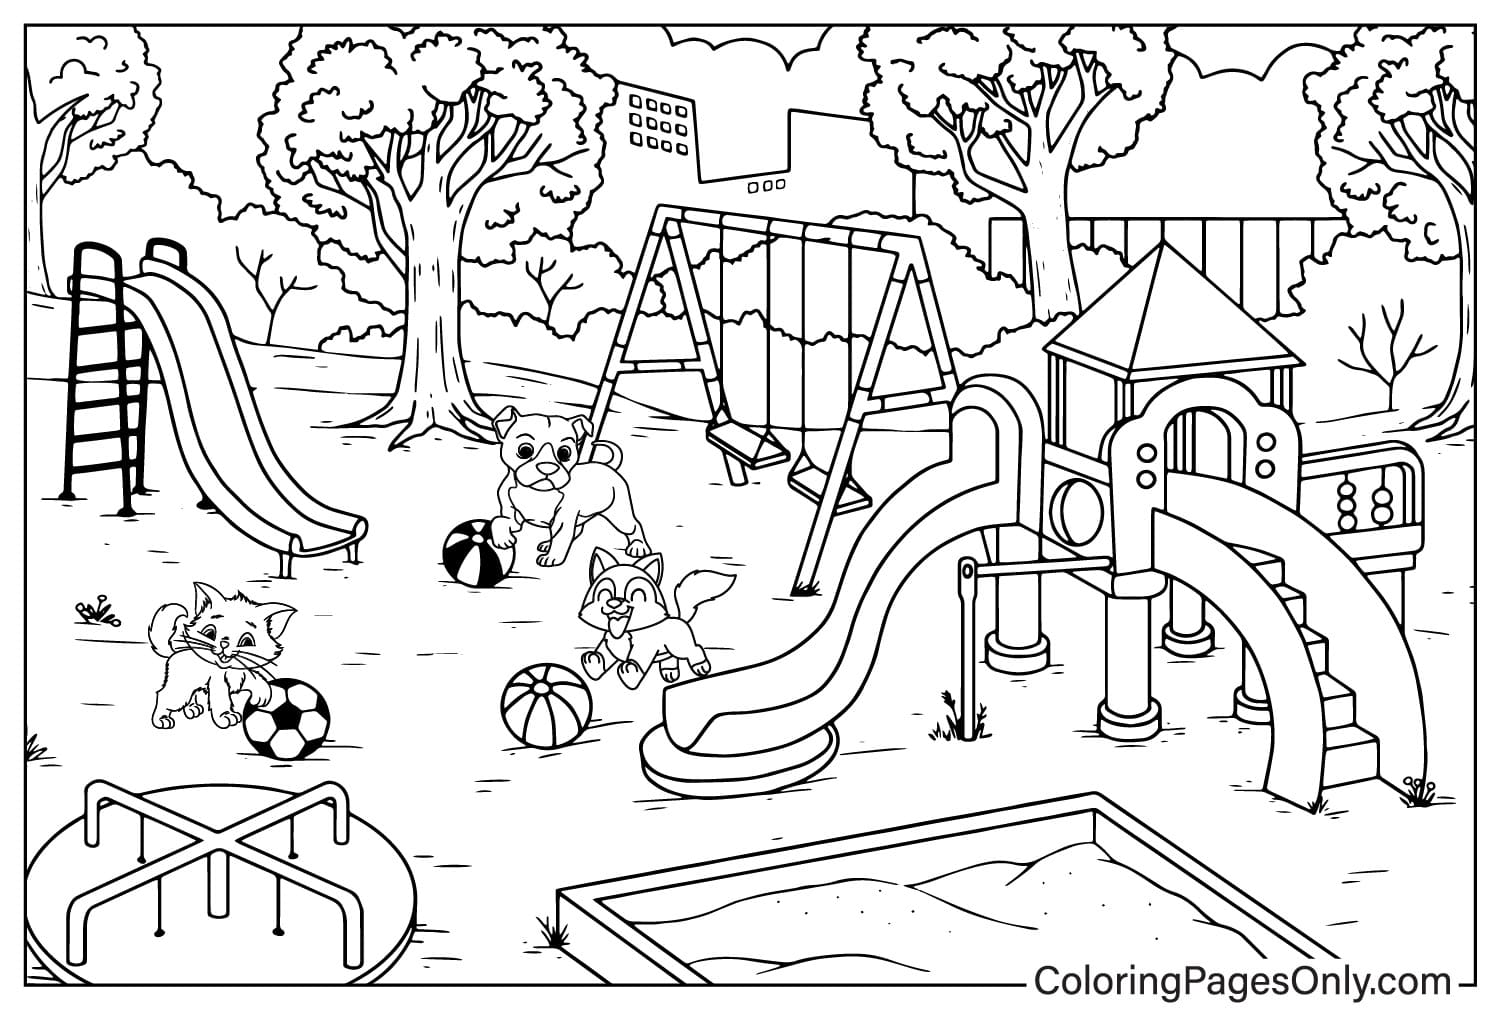 Página para colorear de patio de juegos gratuita de Playground